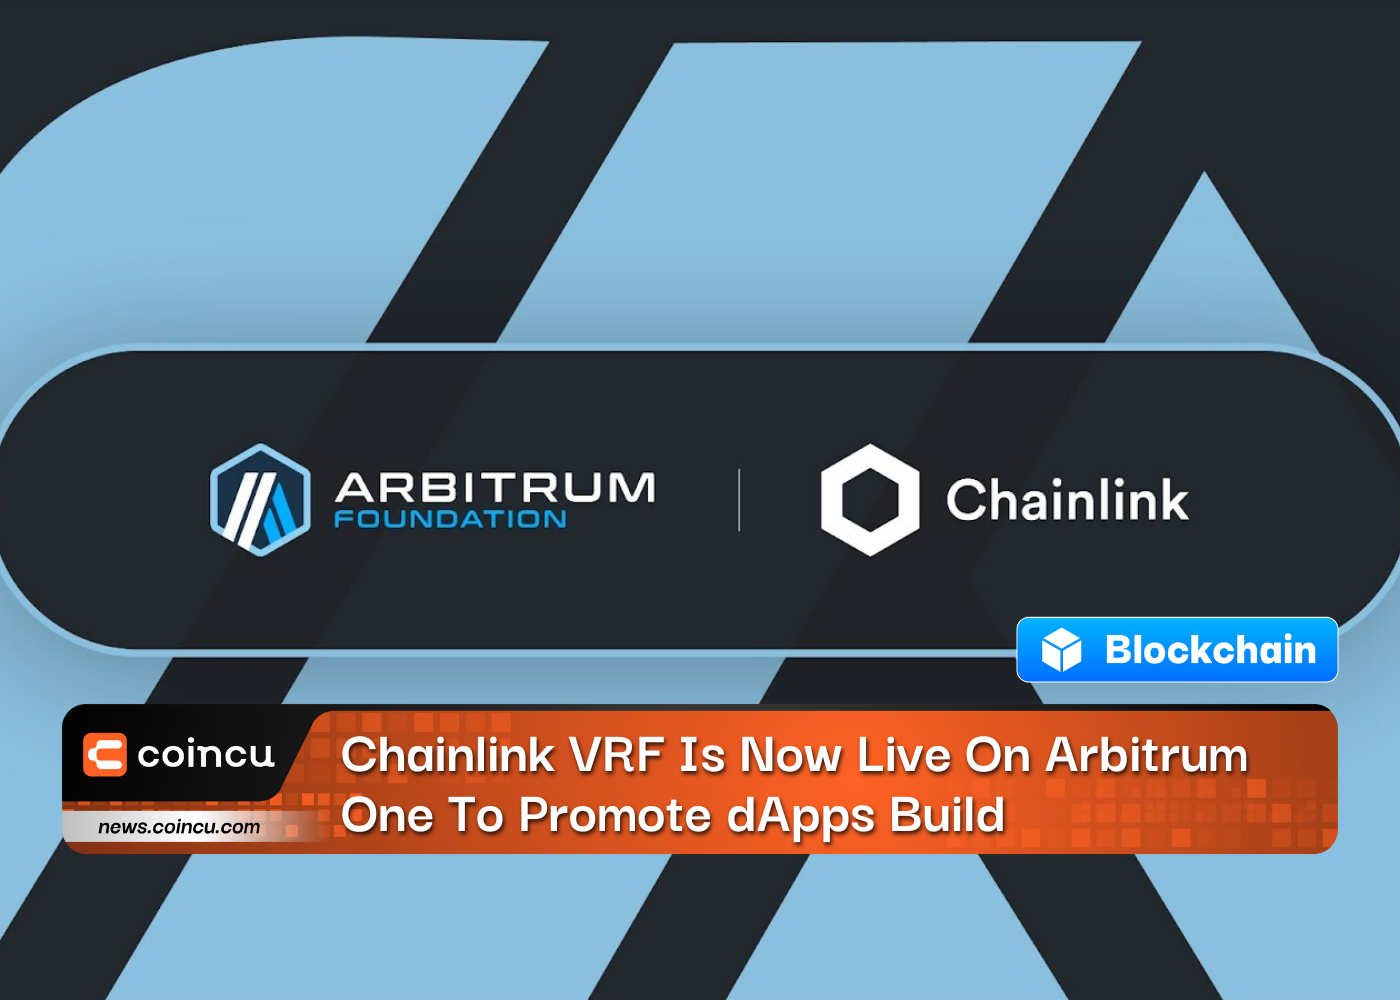 Chainlink VRF ist jetzt auf Arbitrum One live, um die Entwicklung von dApps zu fördern